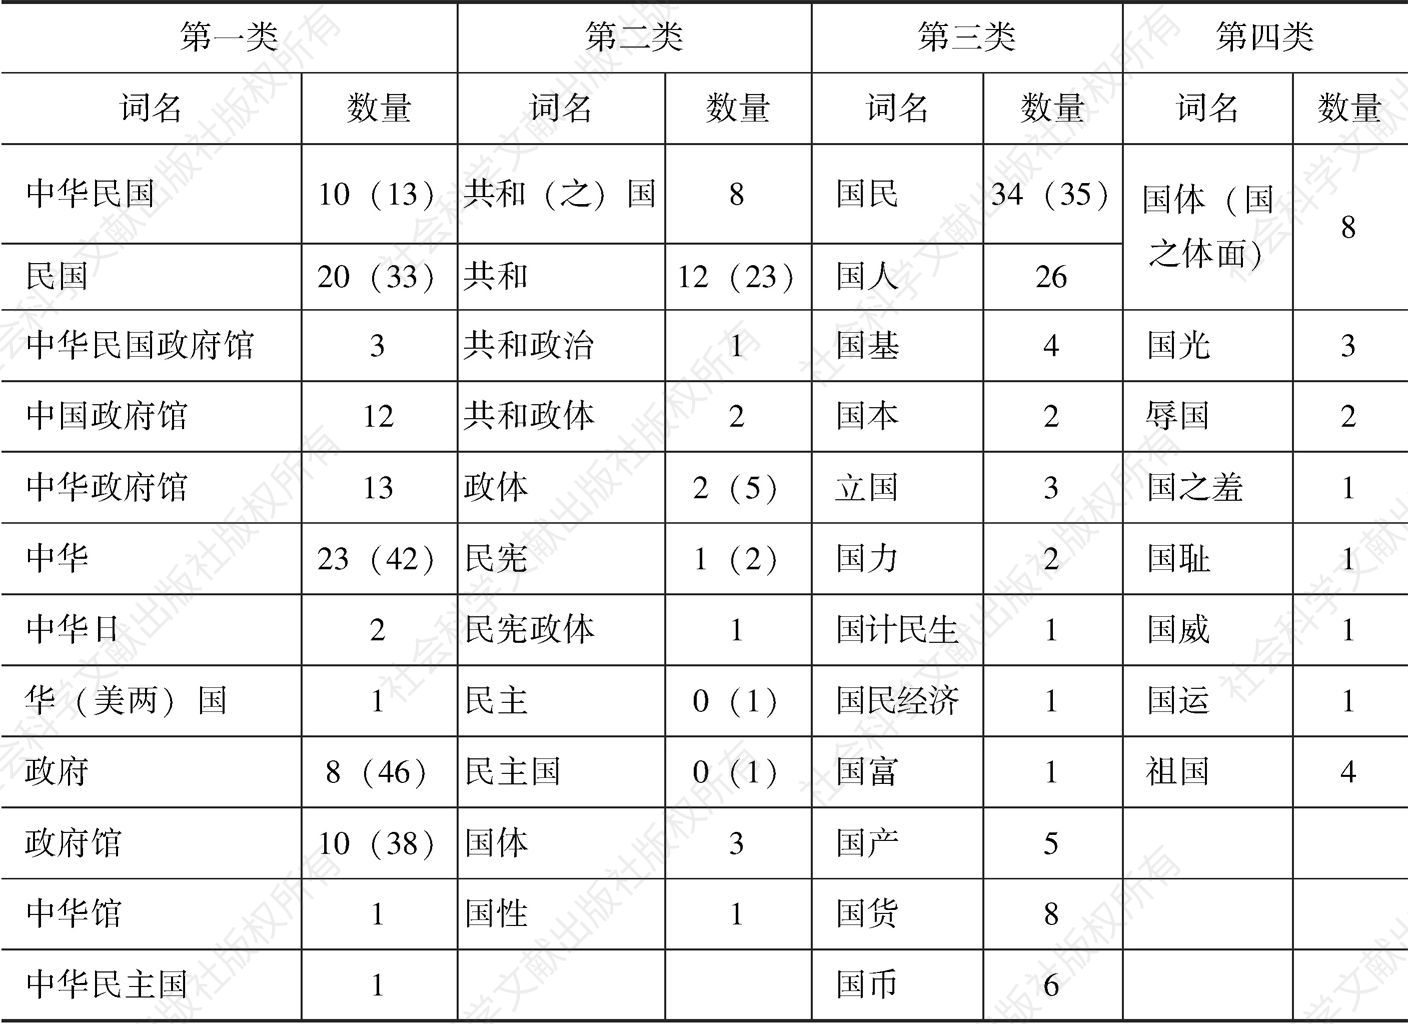 表4-6 中国赴赛巴博会言论及所留文献中关于“国”之词语的种类与数量分布